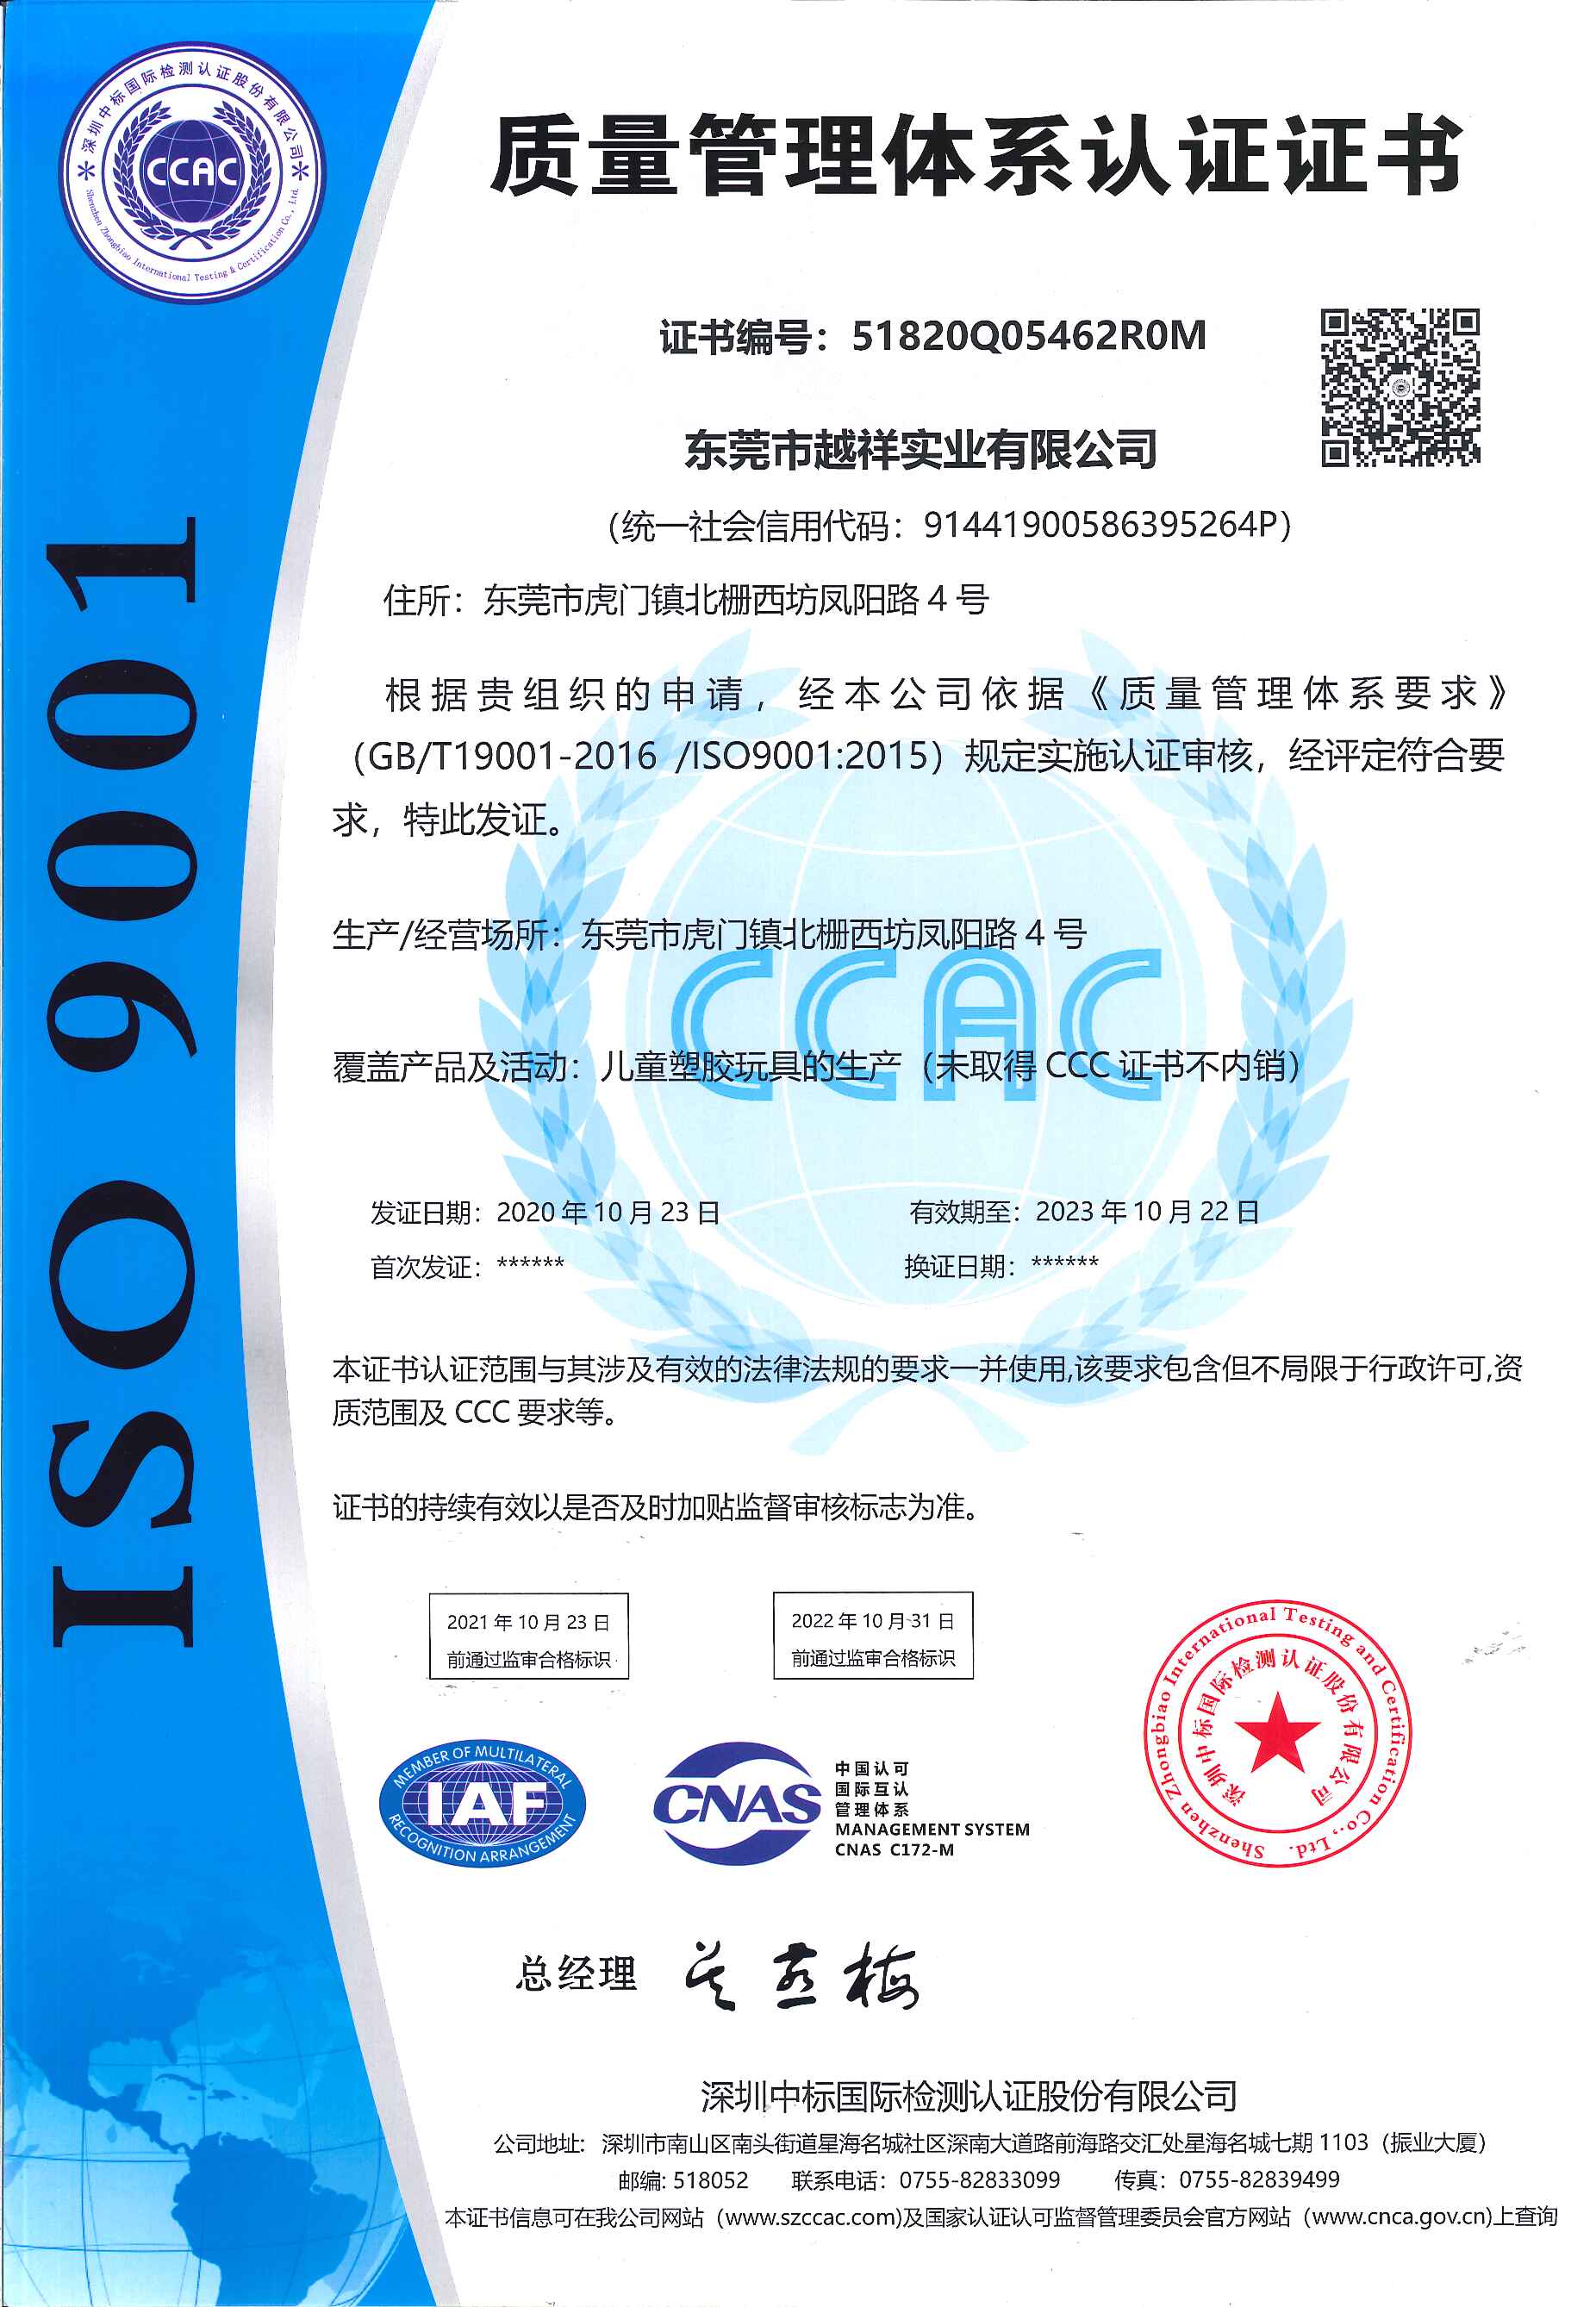 恭贺东莞市越祥实业有限公司成功拿到ISO9001认证证书